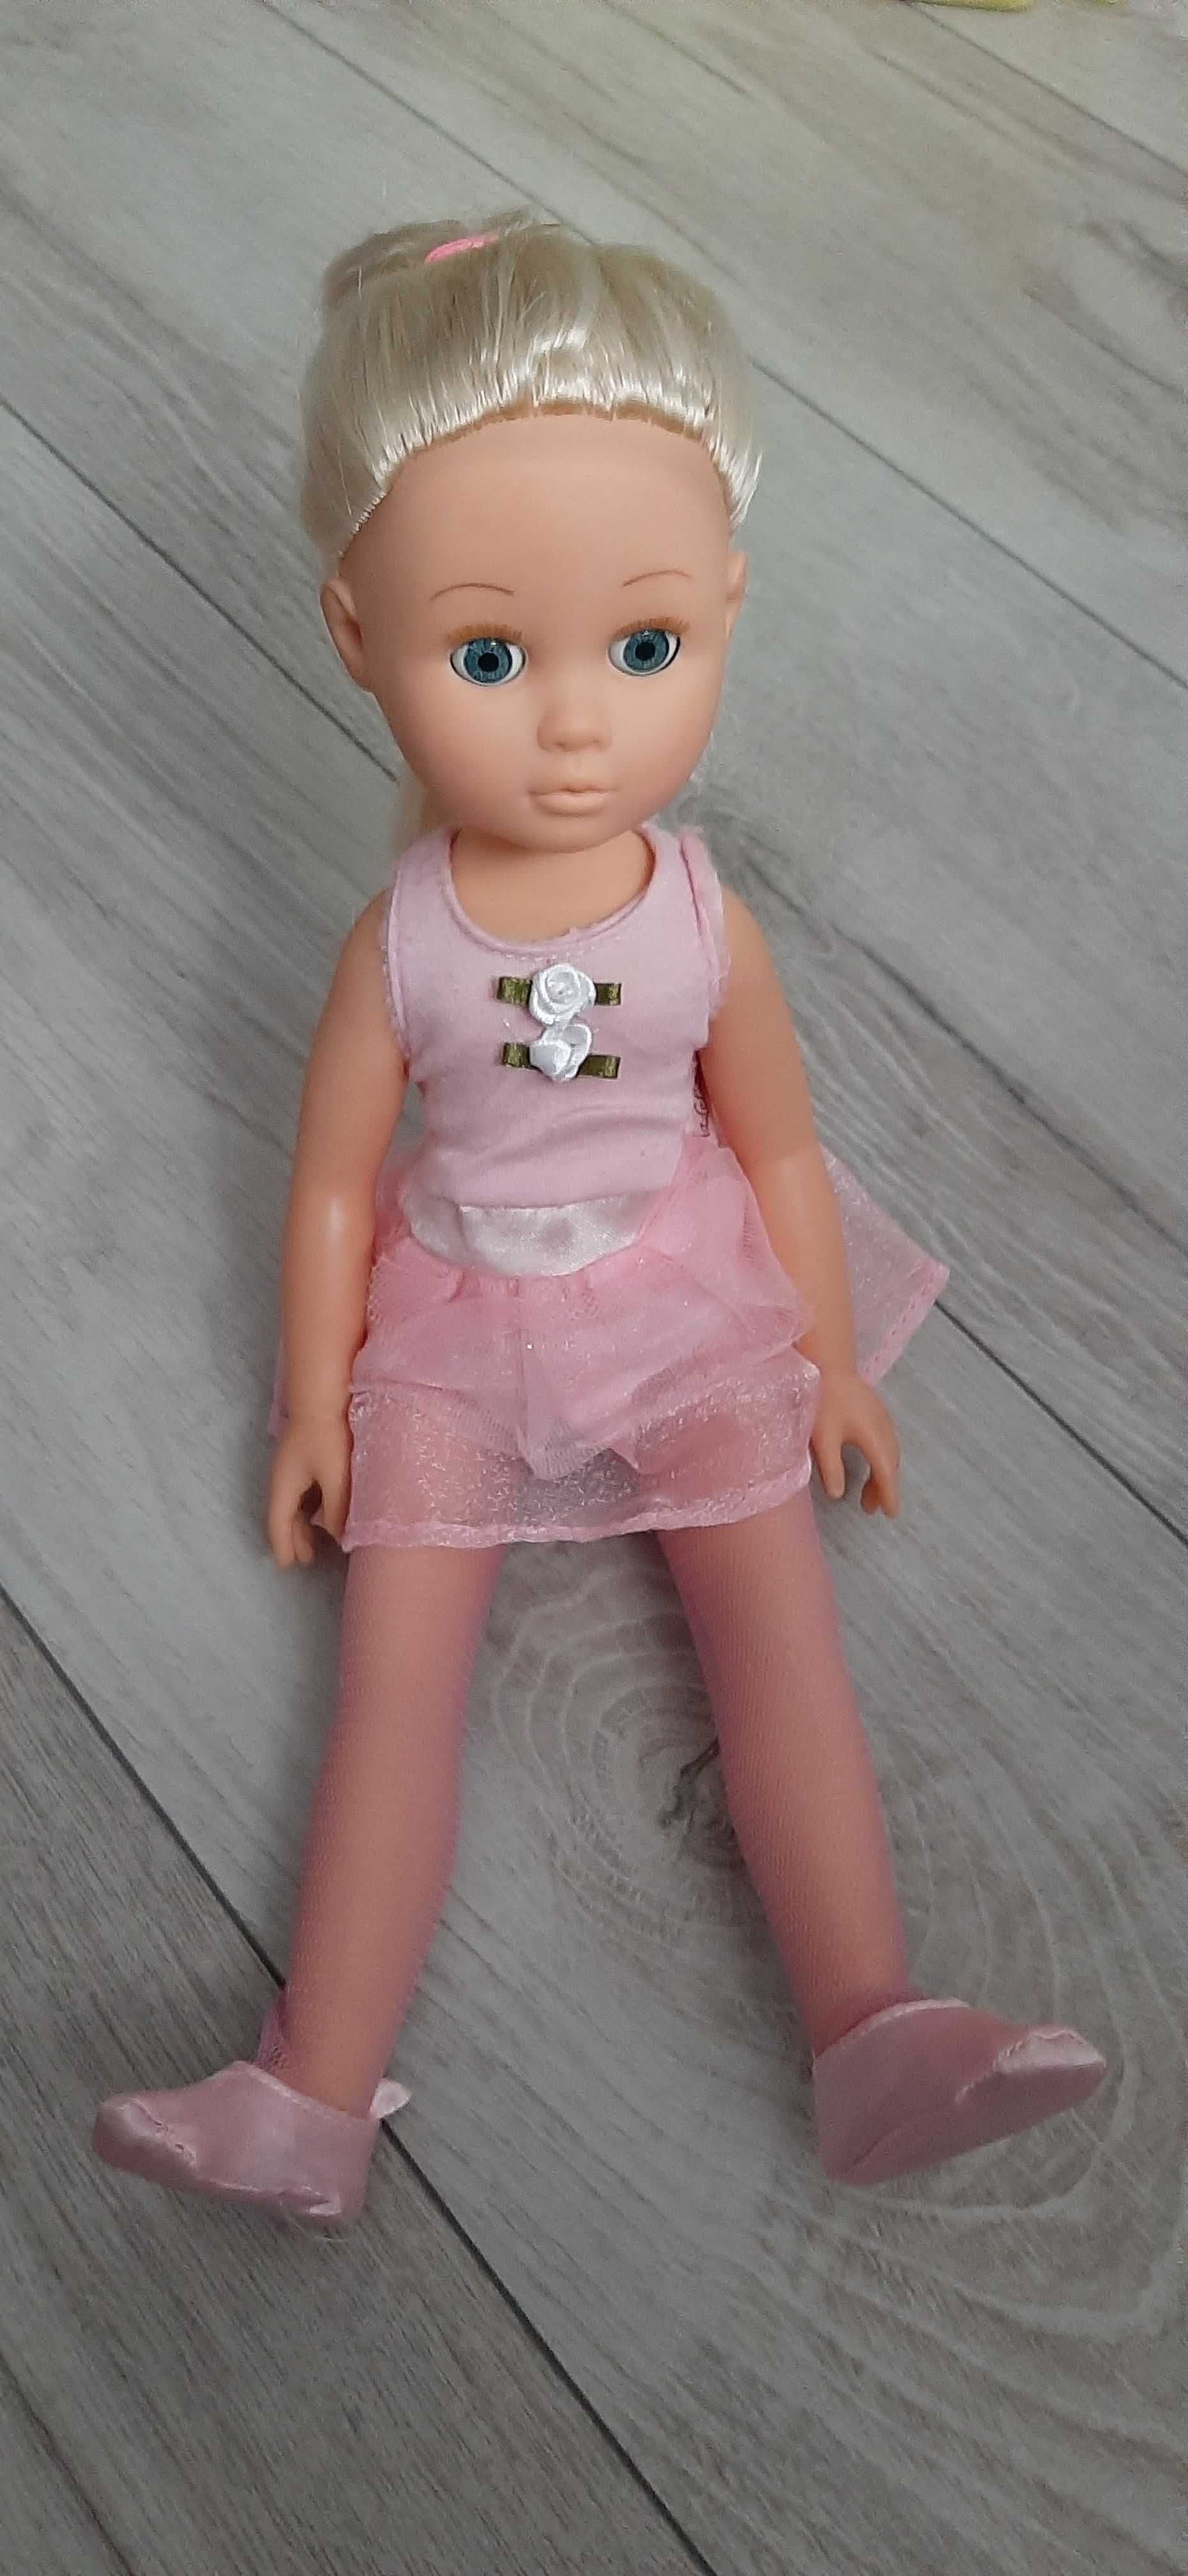 Lalka Barbie superbohaterka syrenk